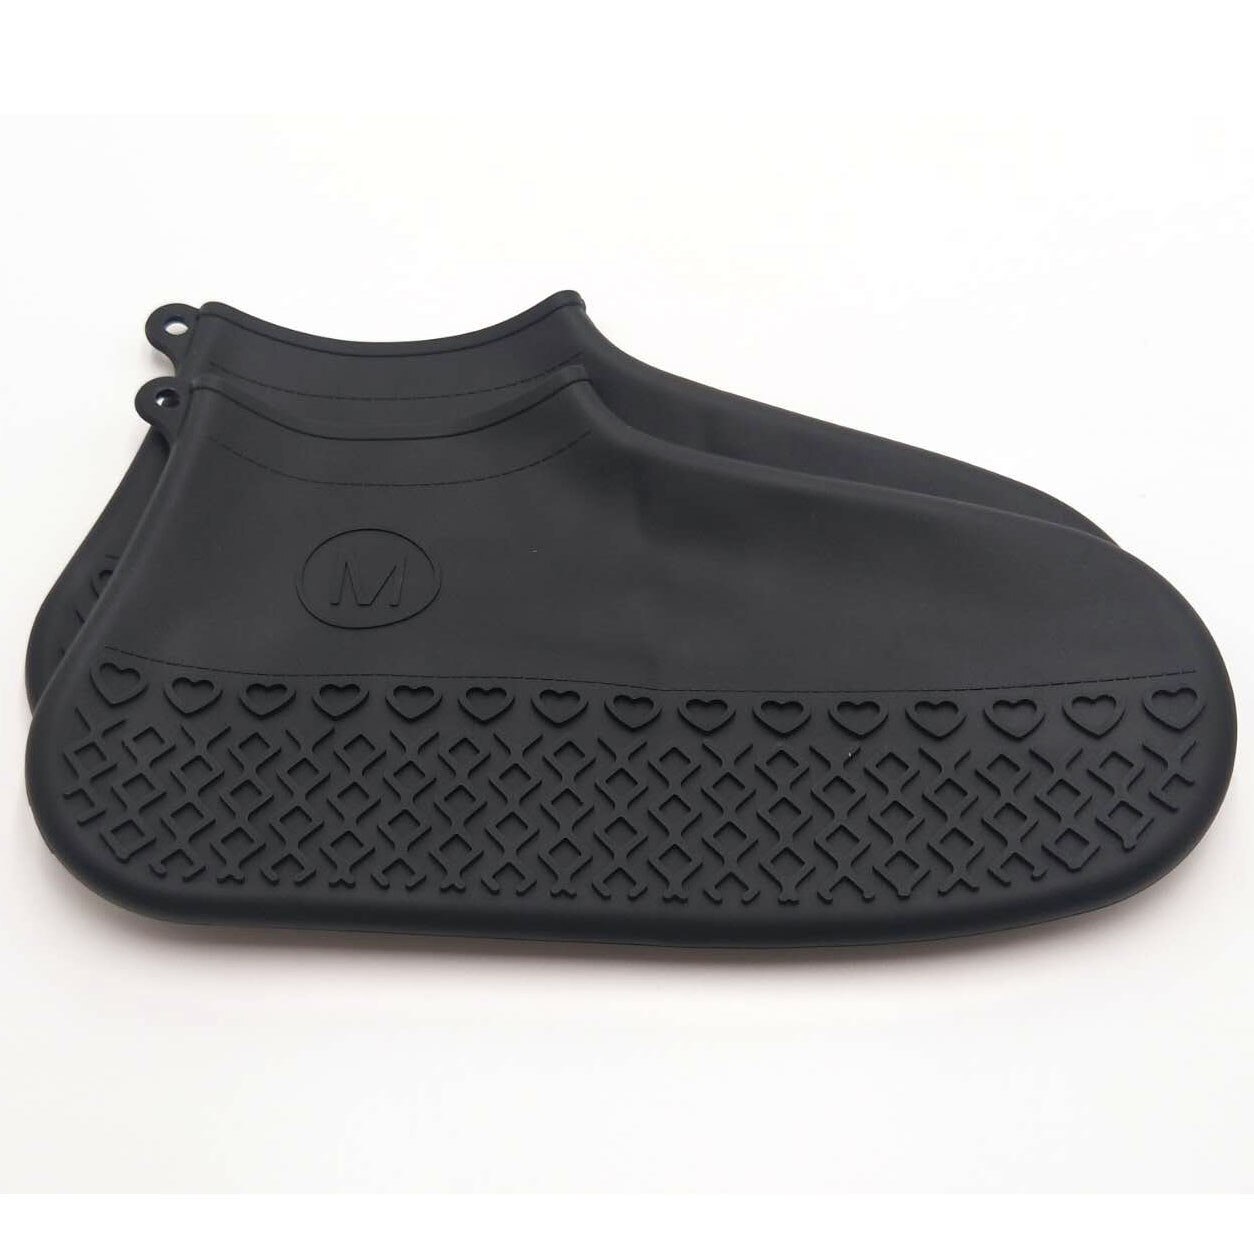 Vandtæt silikone skodæksel udendørs regntæt vandreture skridsikker skoovertræk udendørs camping skridsikker gummiregnsko: Bkm